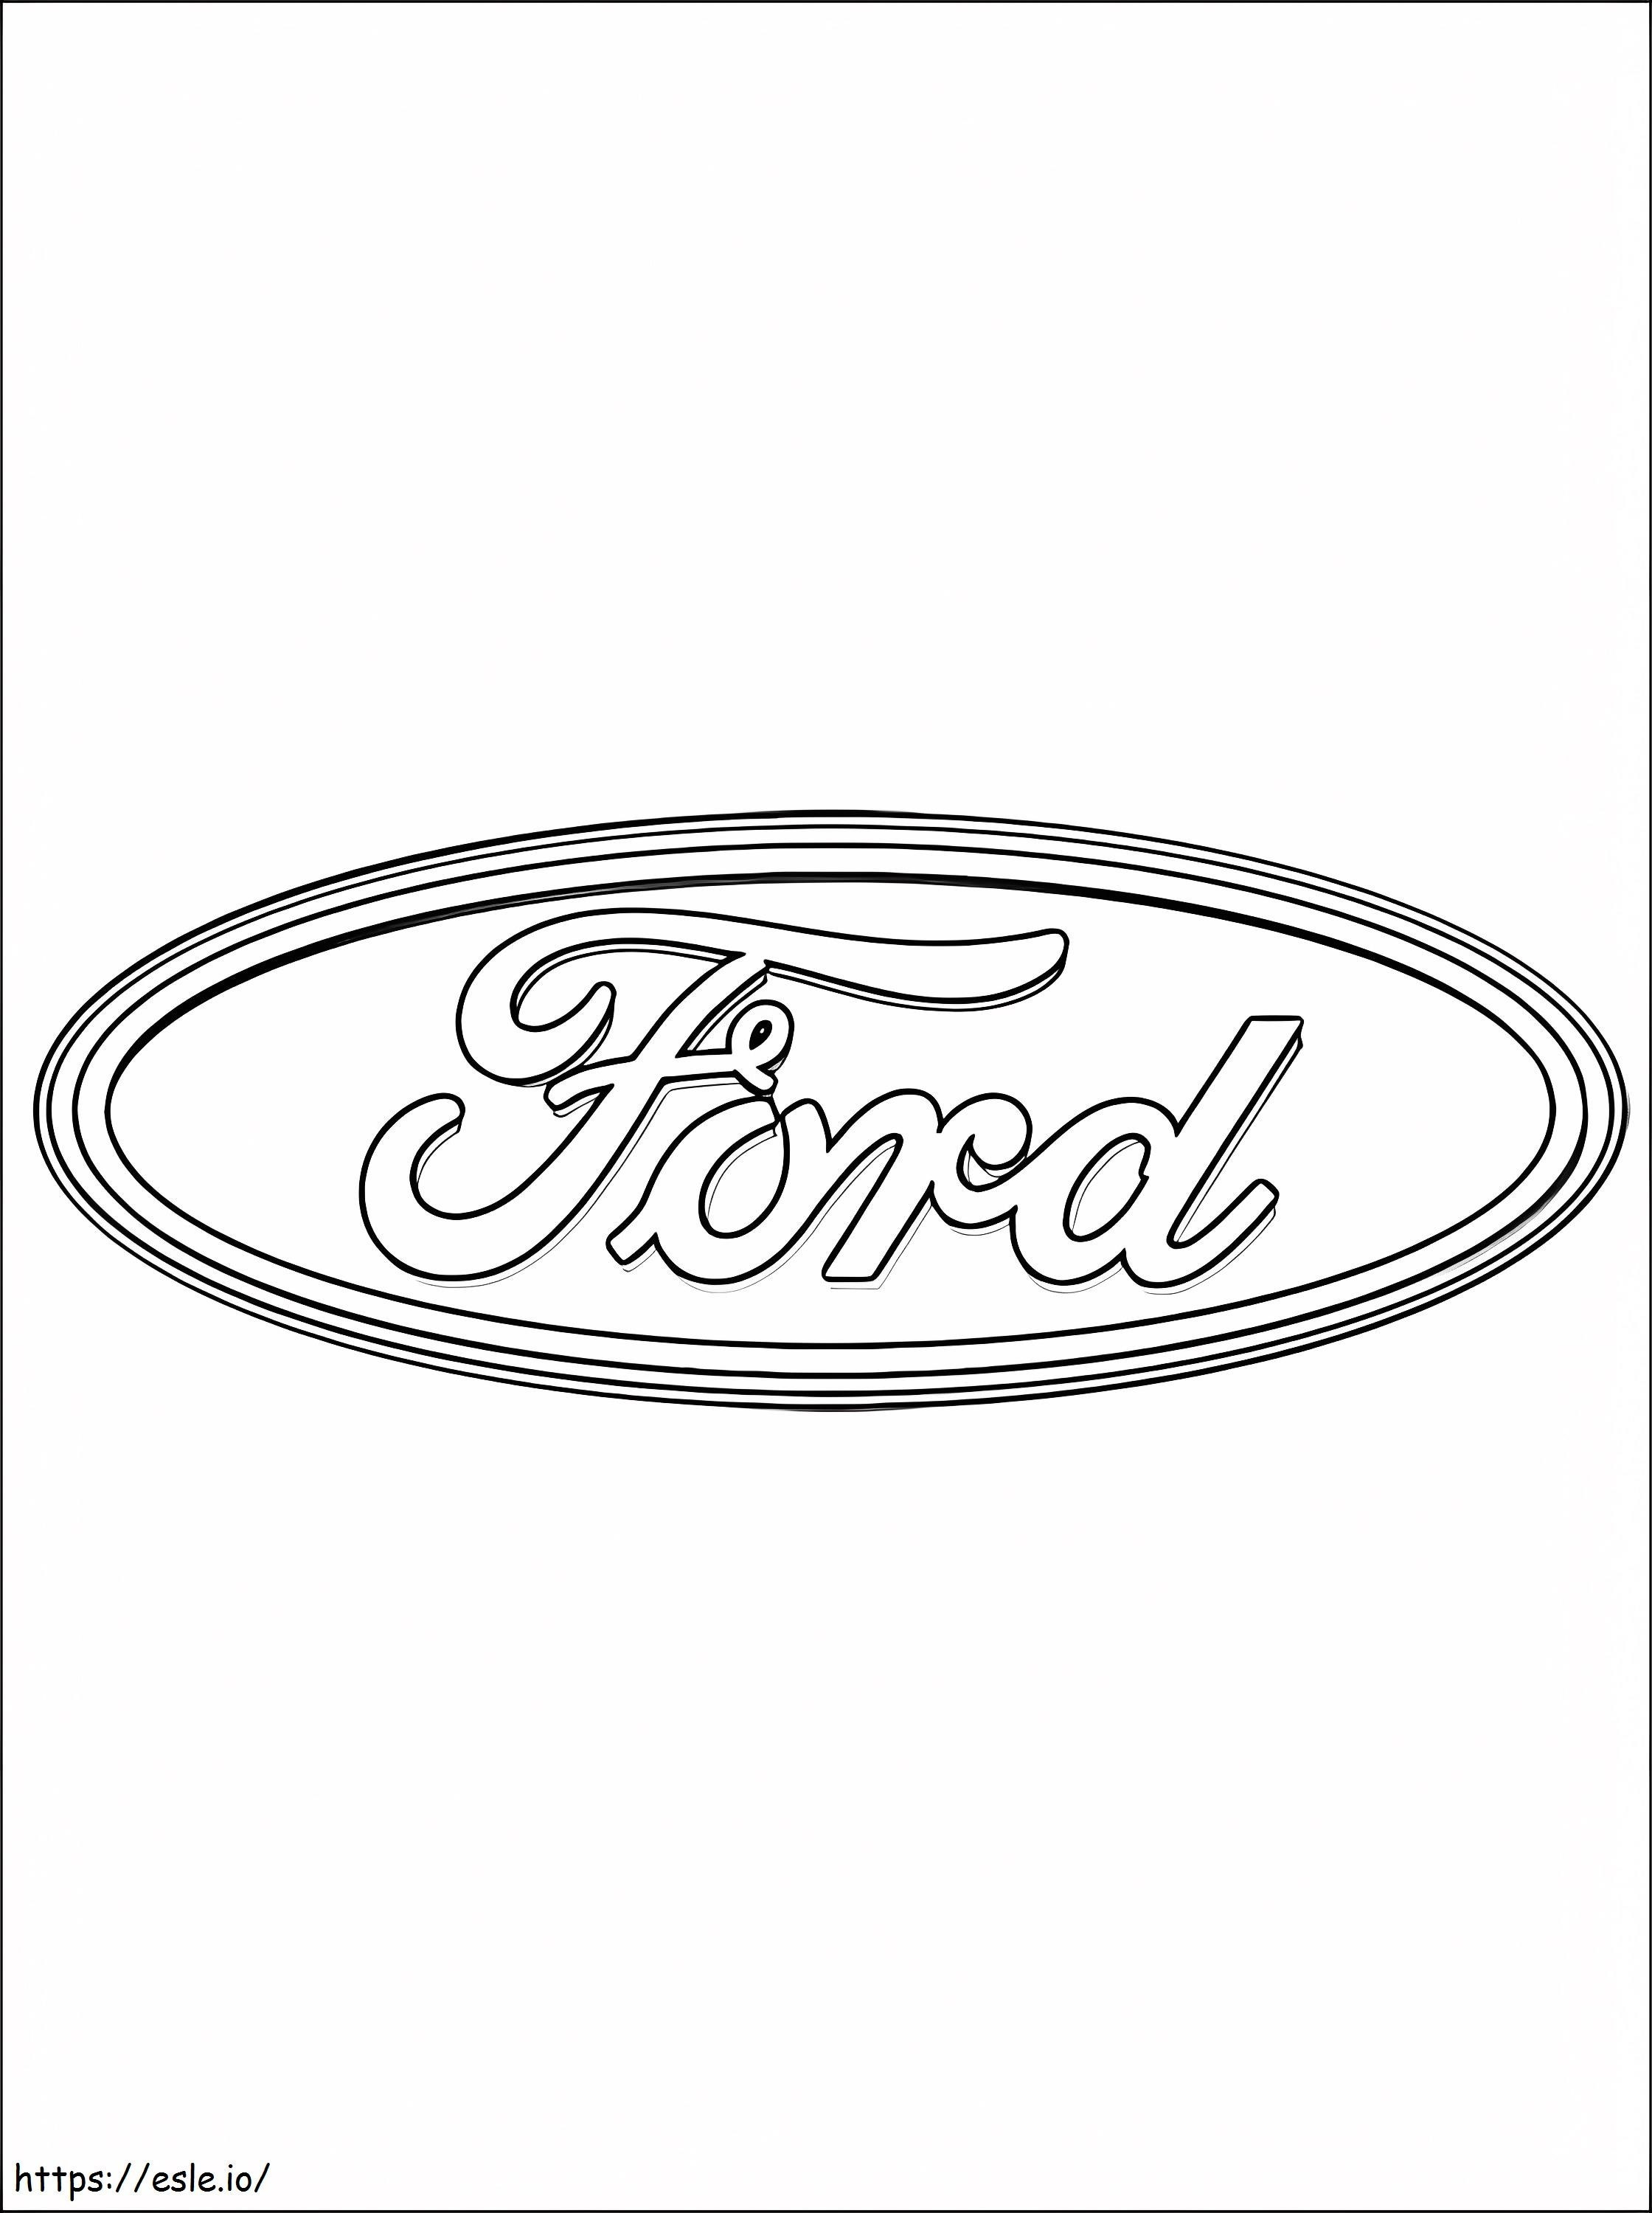 Marchio Ford da colorare